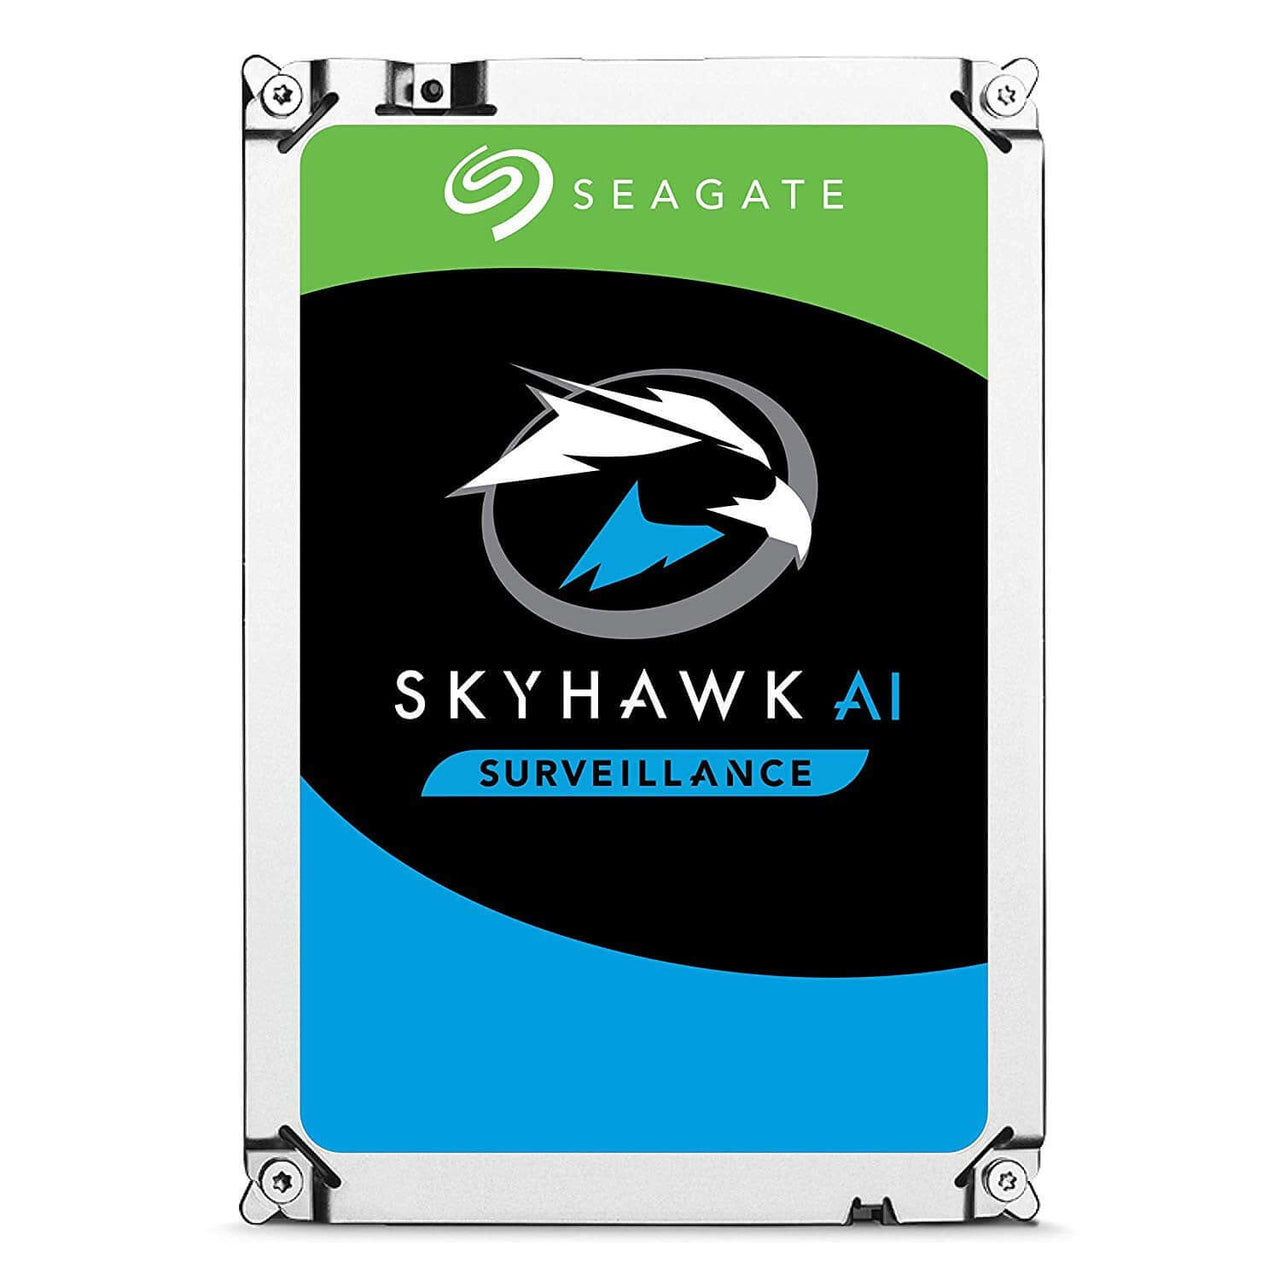 Seagate Skyhawk AI 10TB SATA Hard Drives Dubai UAE